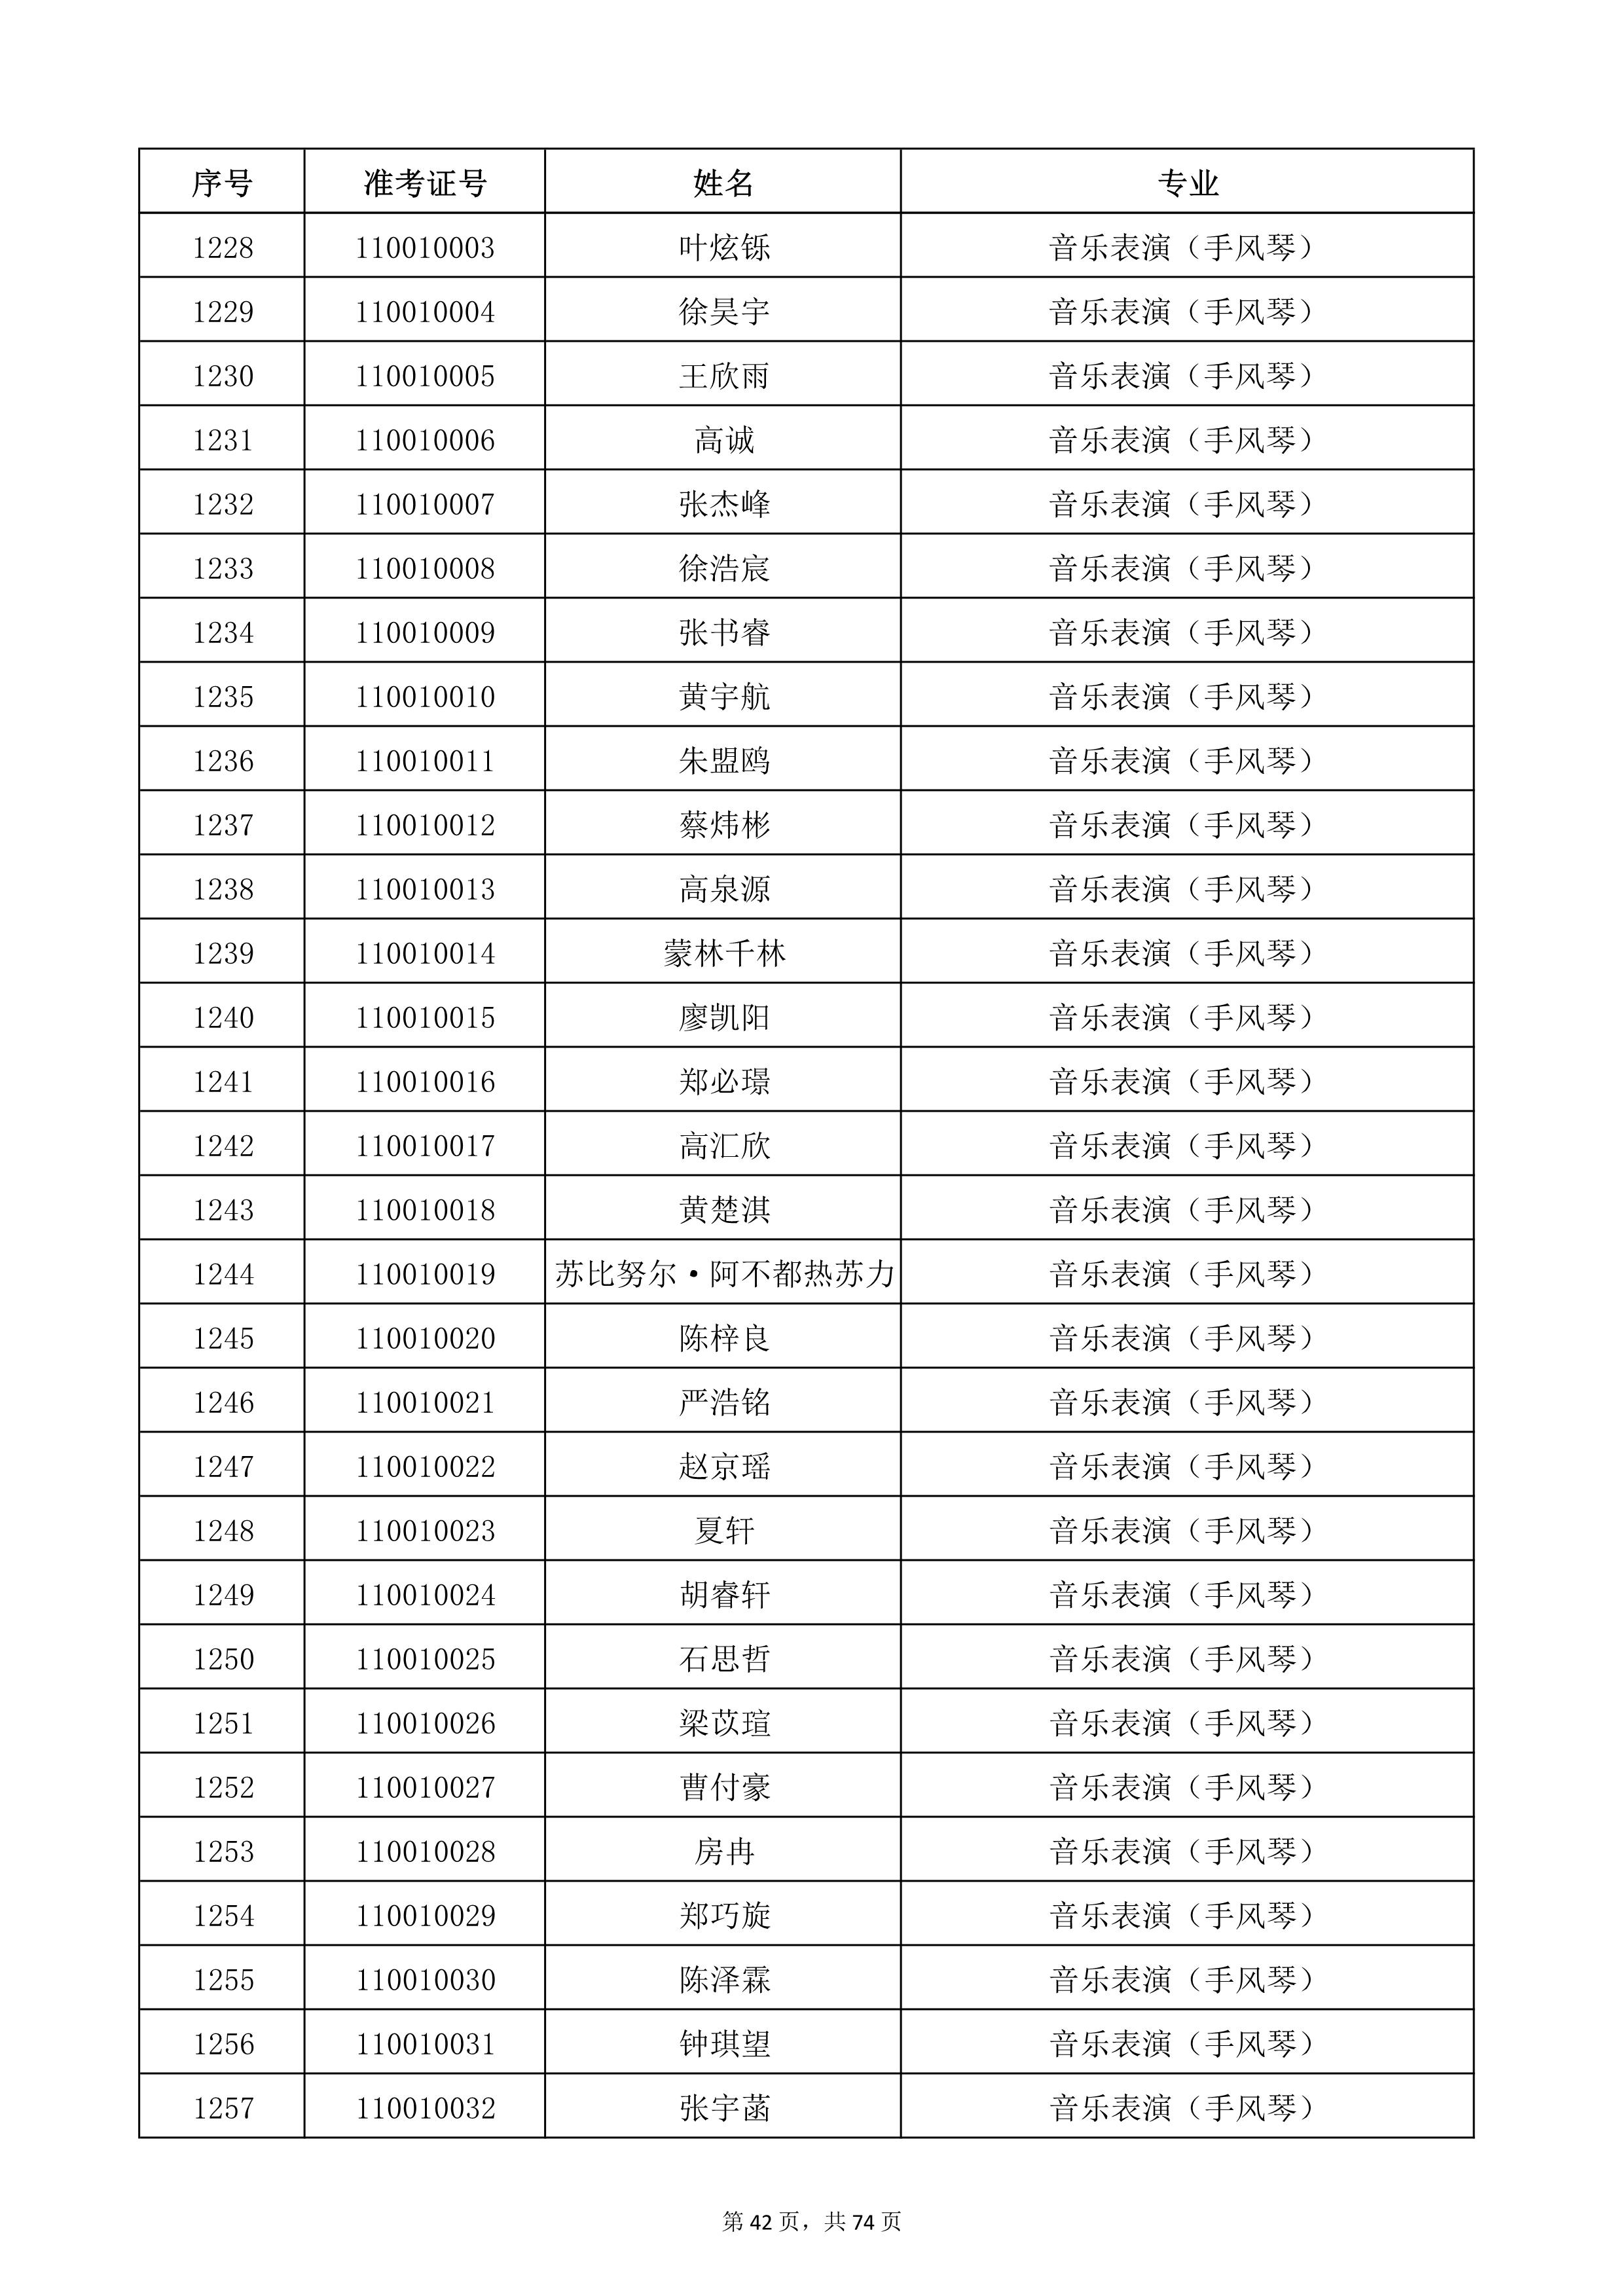 天津音乐学院2022年本科招生考试复试名单_42.jpg